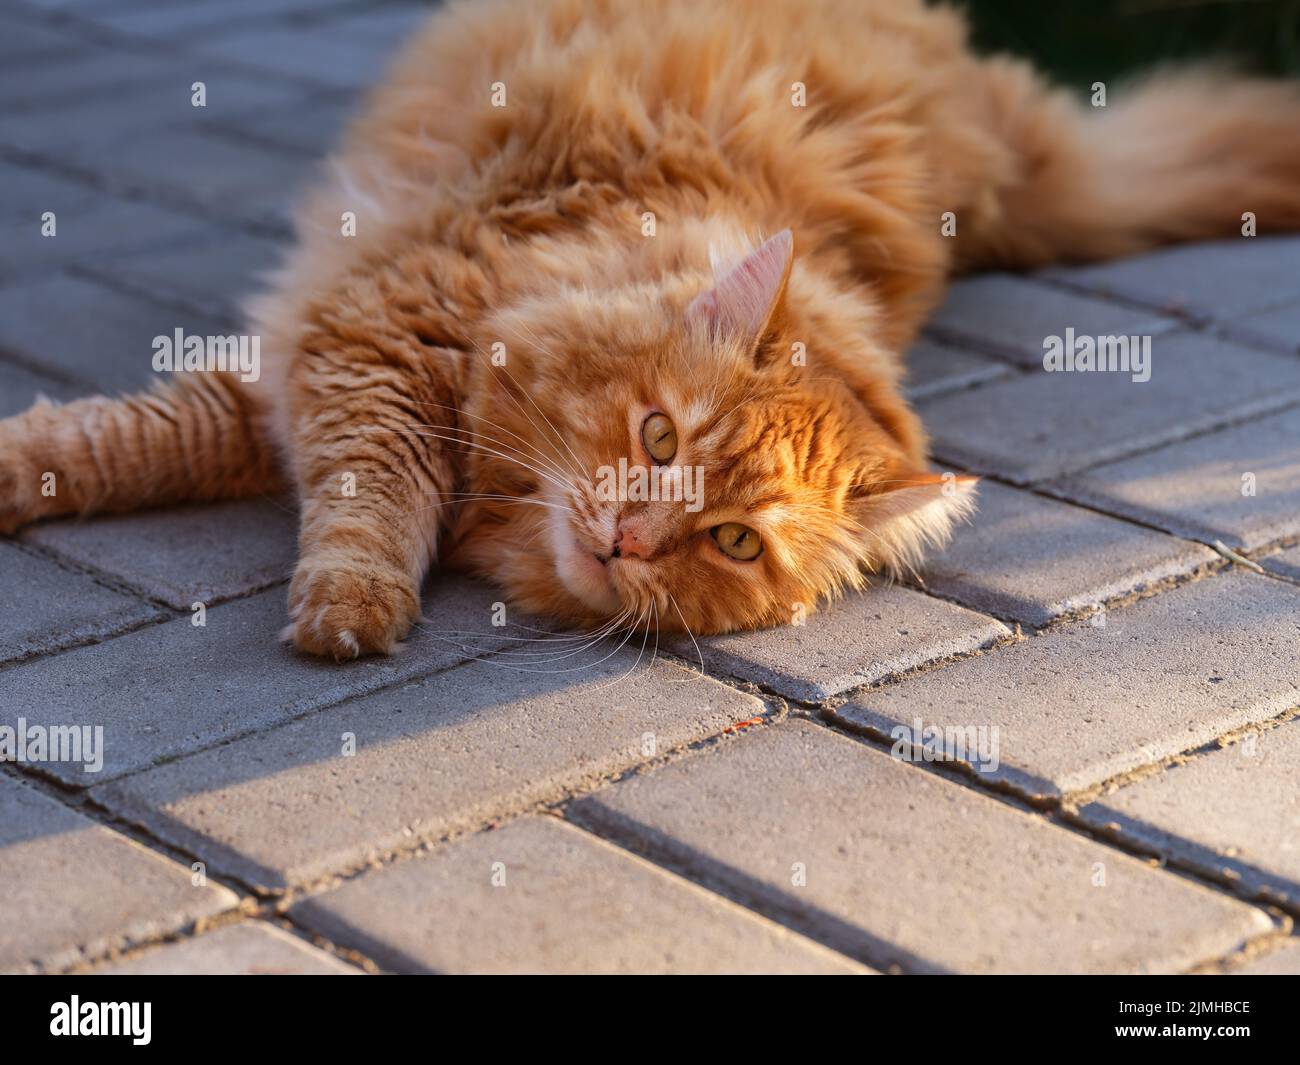 Un gato Ginger tumbado sobre losas de pavimentación. Foto de stock